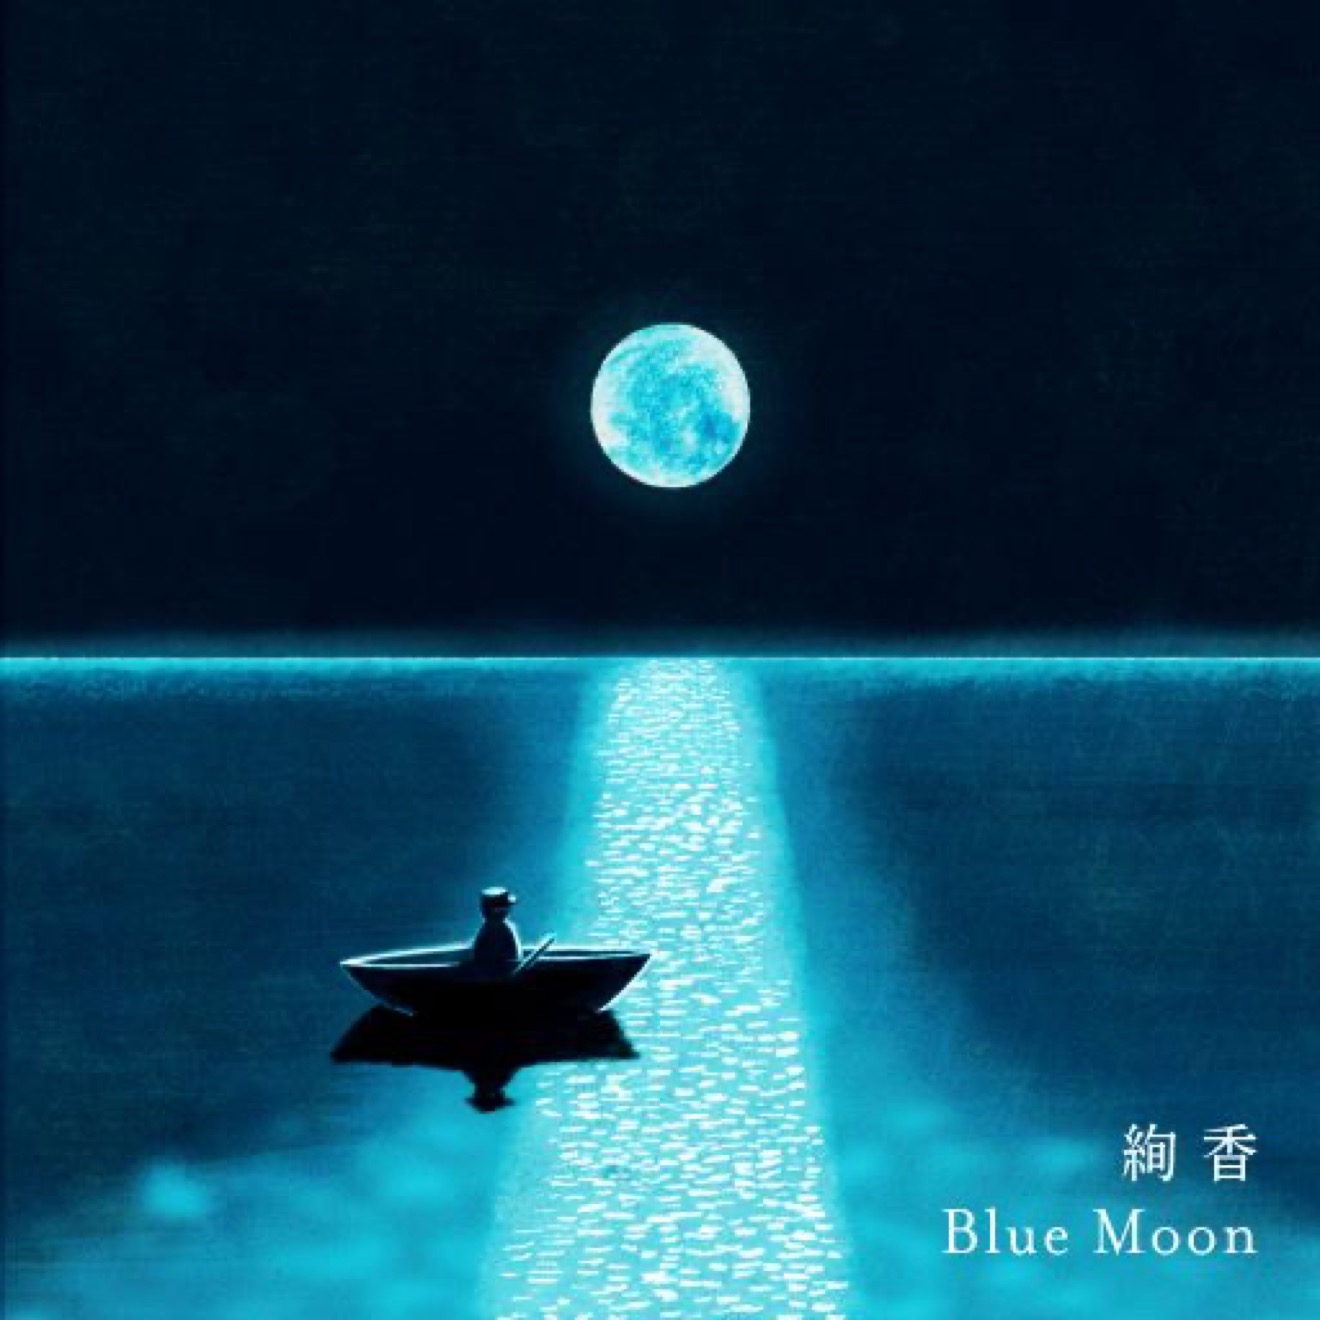 絢香 テイルズ オブ アライズ グランドテーマ Blue Moon を配信 タイアップpvも公開 Barks